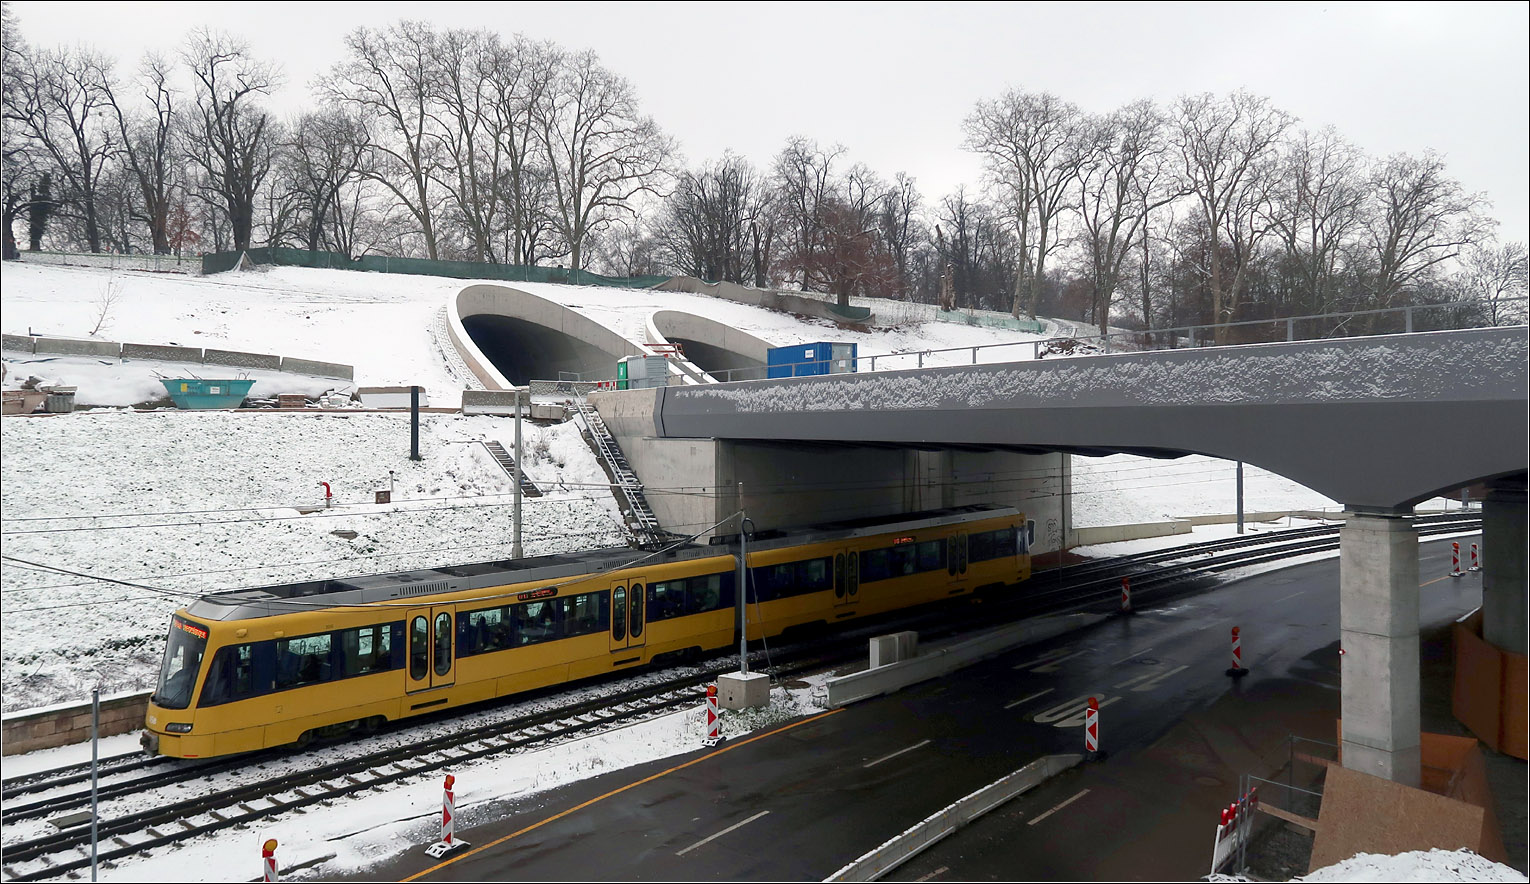 Unterhalb der zukünftigen Tunneleinfahrten -

... unterfährt ein Stadtbahnzug der Stuttgarter Linie U13 die neue Neckarbrücke der Bahn.

Ich nutzte heute die feine Schneedecke um einen kleine Ausflug hierher zu machen, da so der noch nicht begrünte Hang und sein Umfeld eine Einheit bilden und damit den Baustellen-Charakter an dieser Stelle mildert.

Durch seine gelbe Farbe zieht aber der Stadtbahnwagen die Blicke auf sich.

Stuttgart-Bad Cannstatt, 22.01.2023 (M)